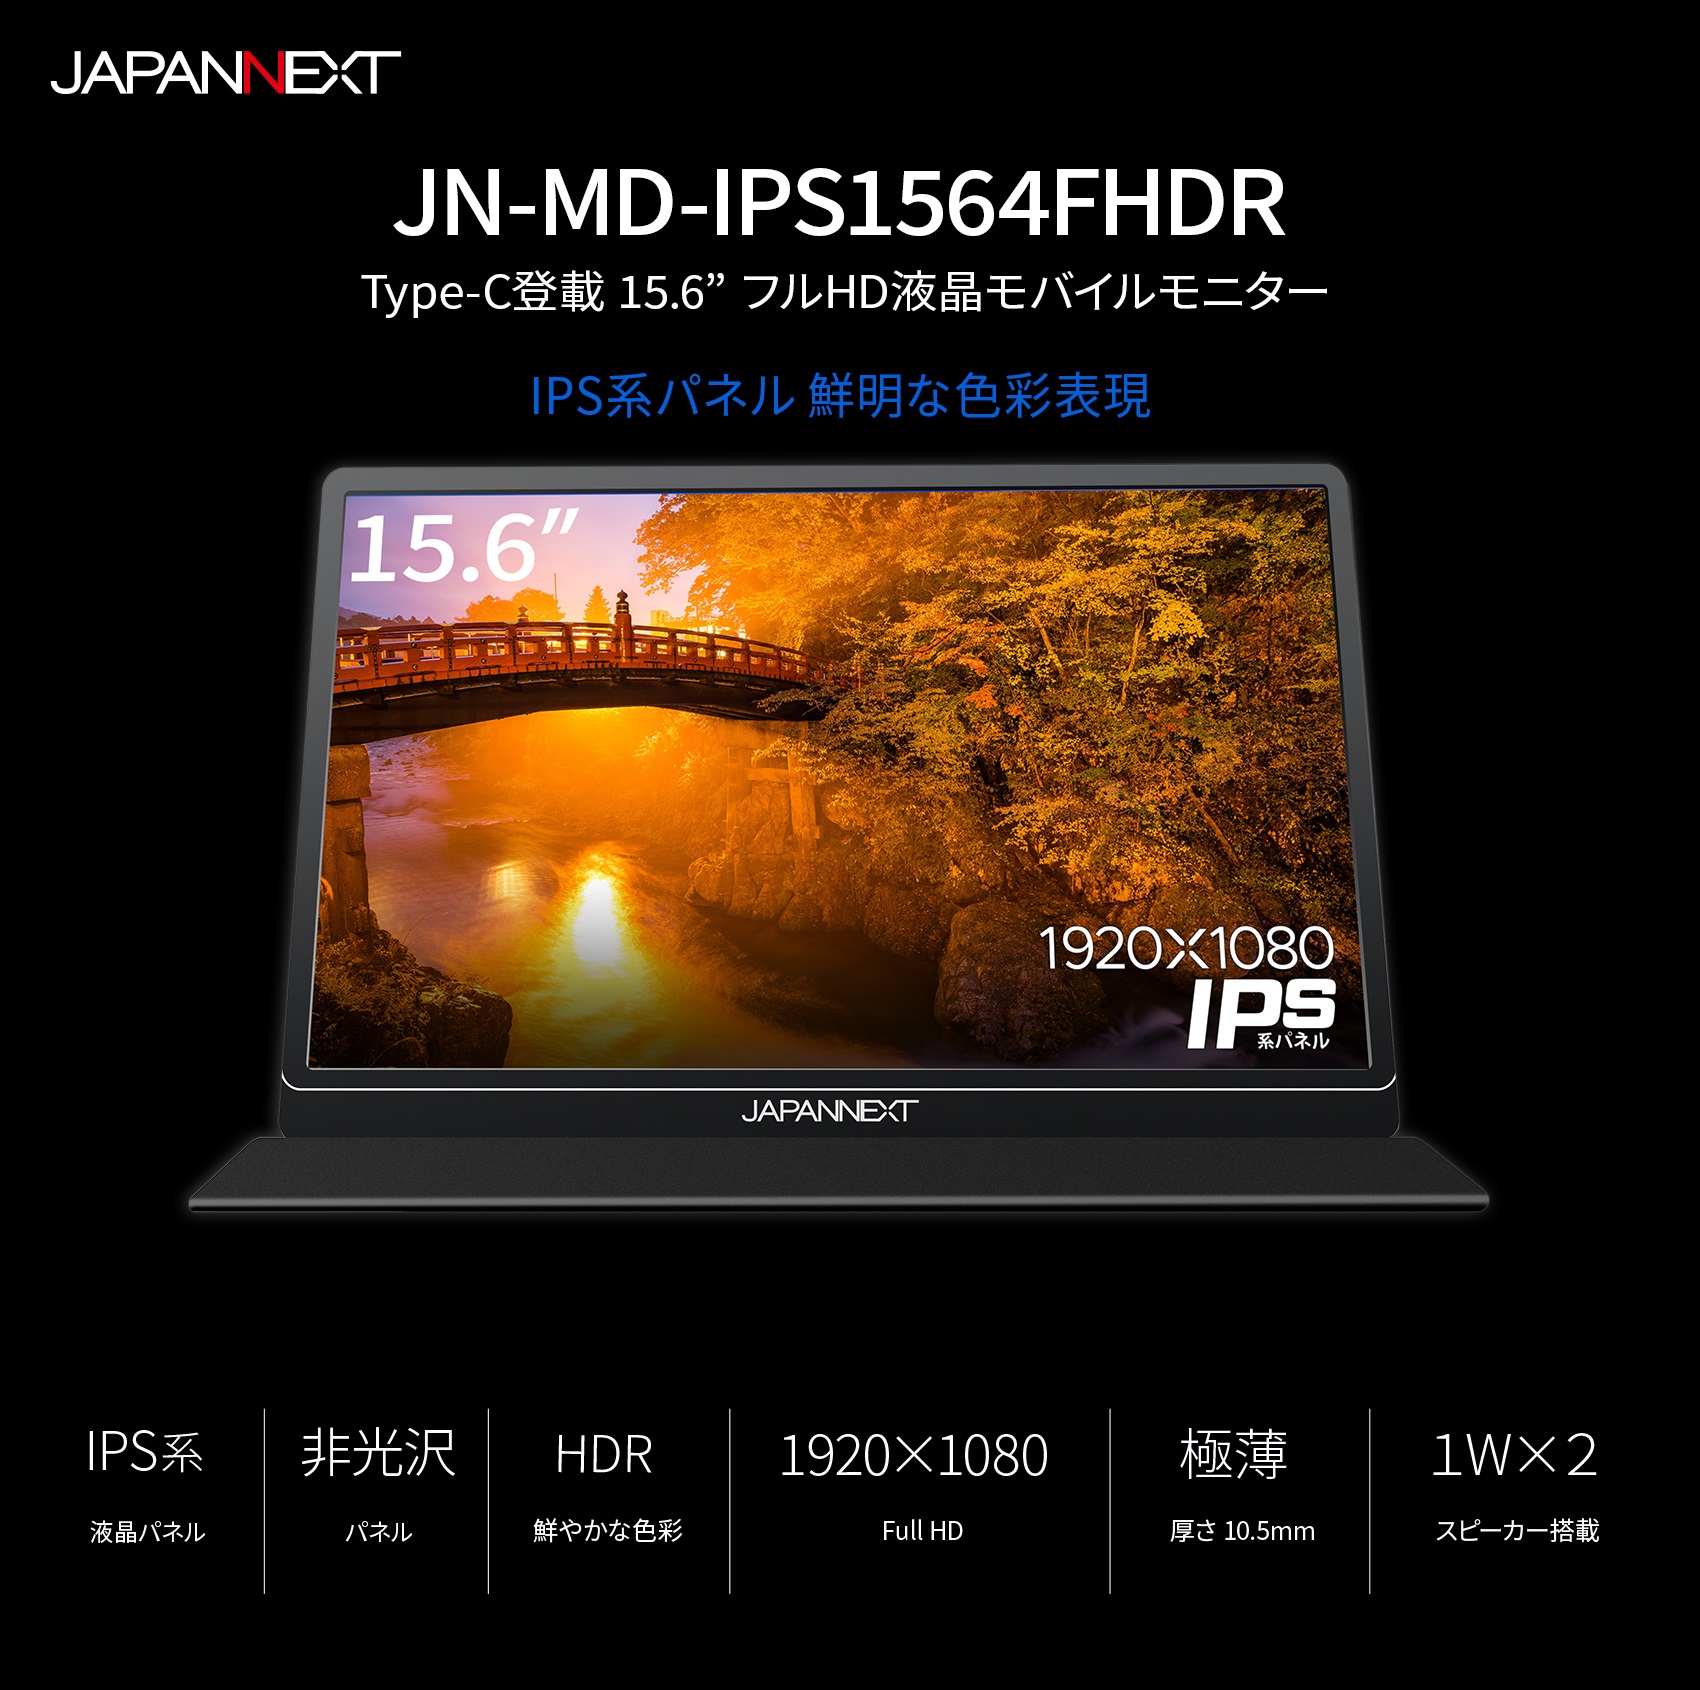 JAPANNEXT 「JN-MD-IPS1564FHDR」 15.6型 フルHD(1920×1080) モバイル